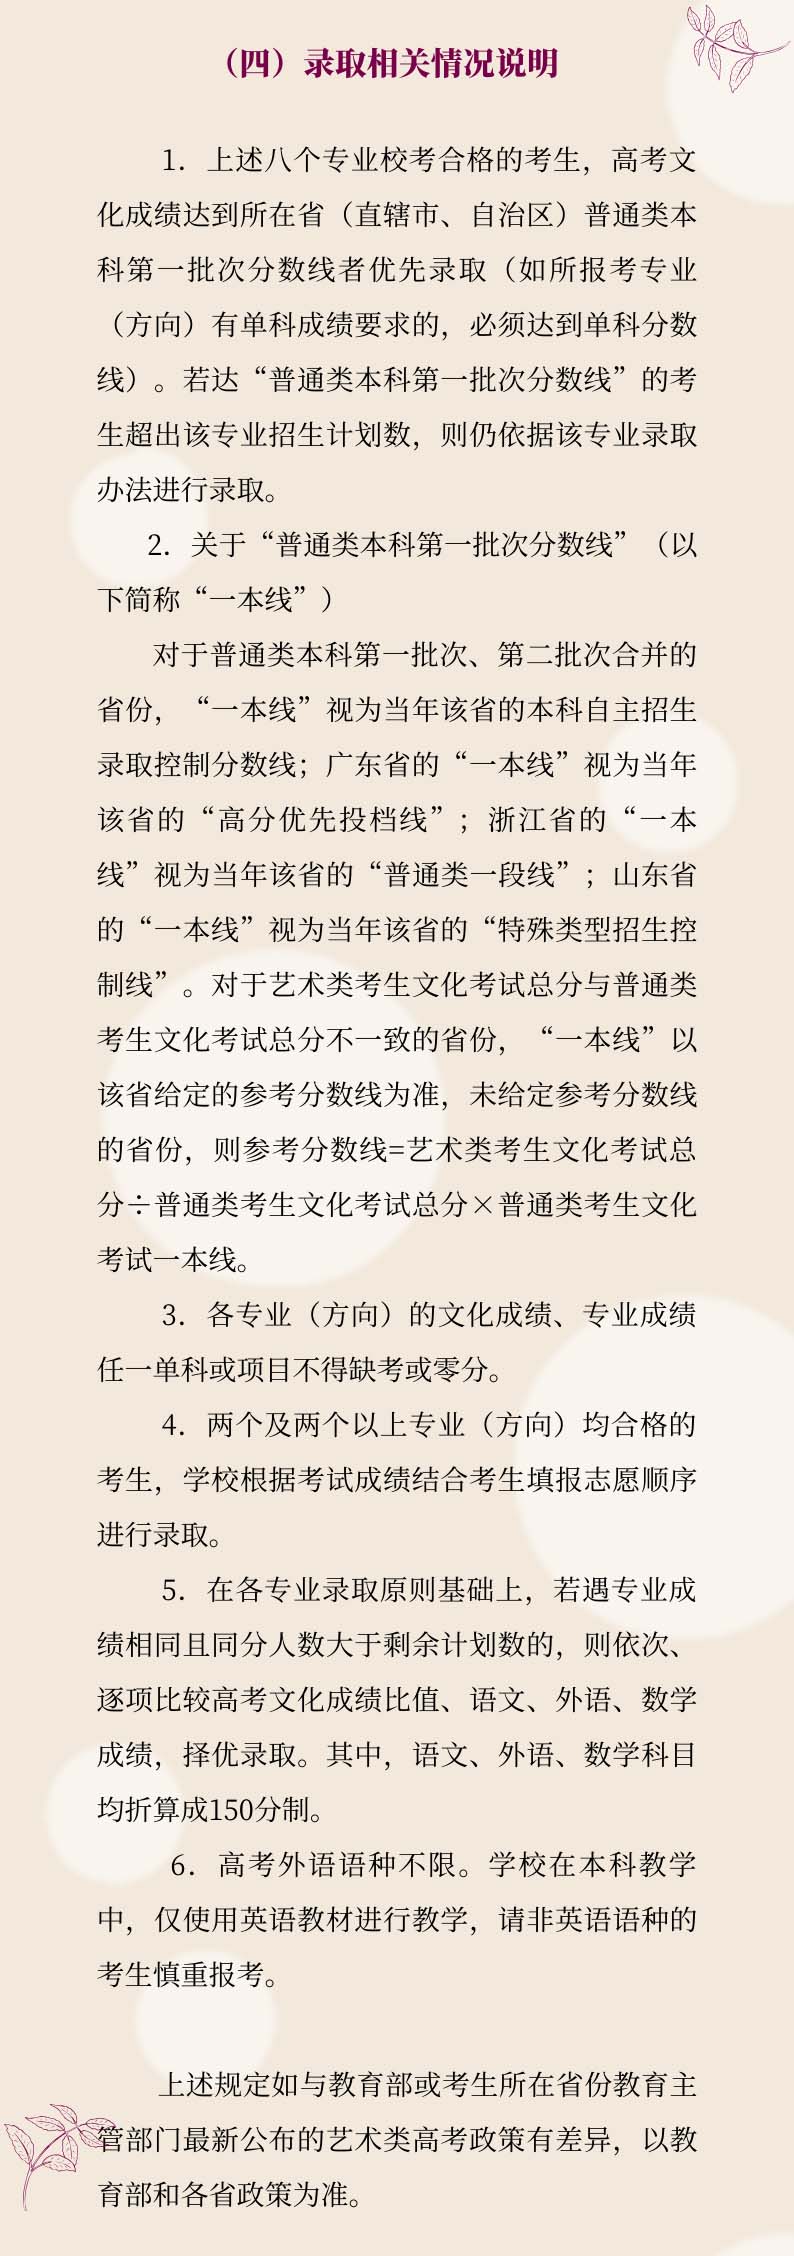 上海戏剧学院2020年艺术类专业校考调整方案